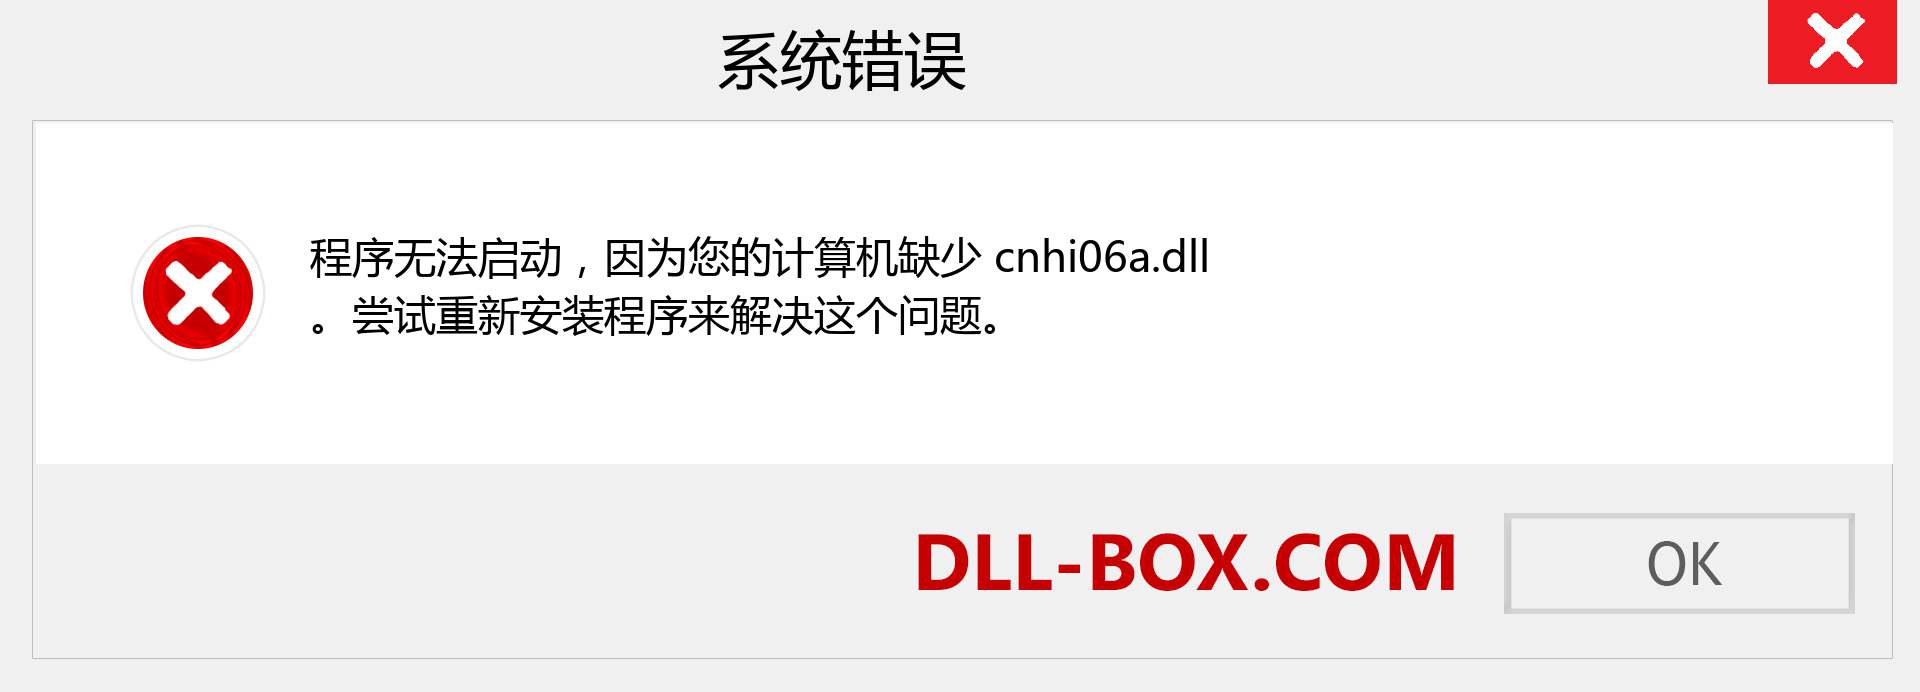 cnhi06a.dll 文件丢失？。 适用于 Windows 7、8、10 的下载 - 修复 Windows、照片、图像上的 cnhi06a dll 丢失错误